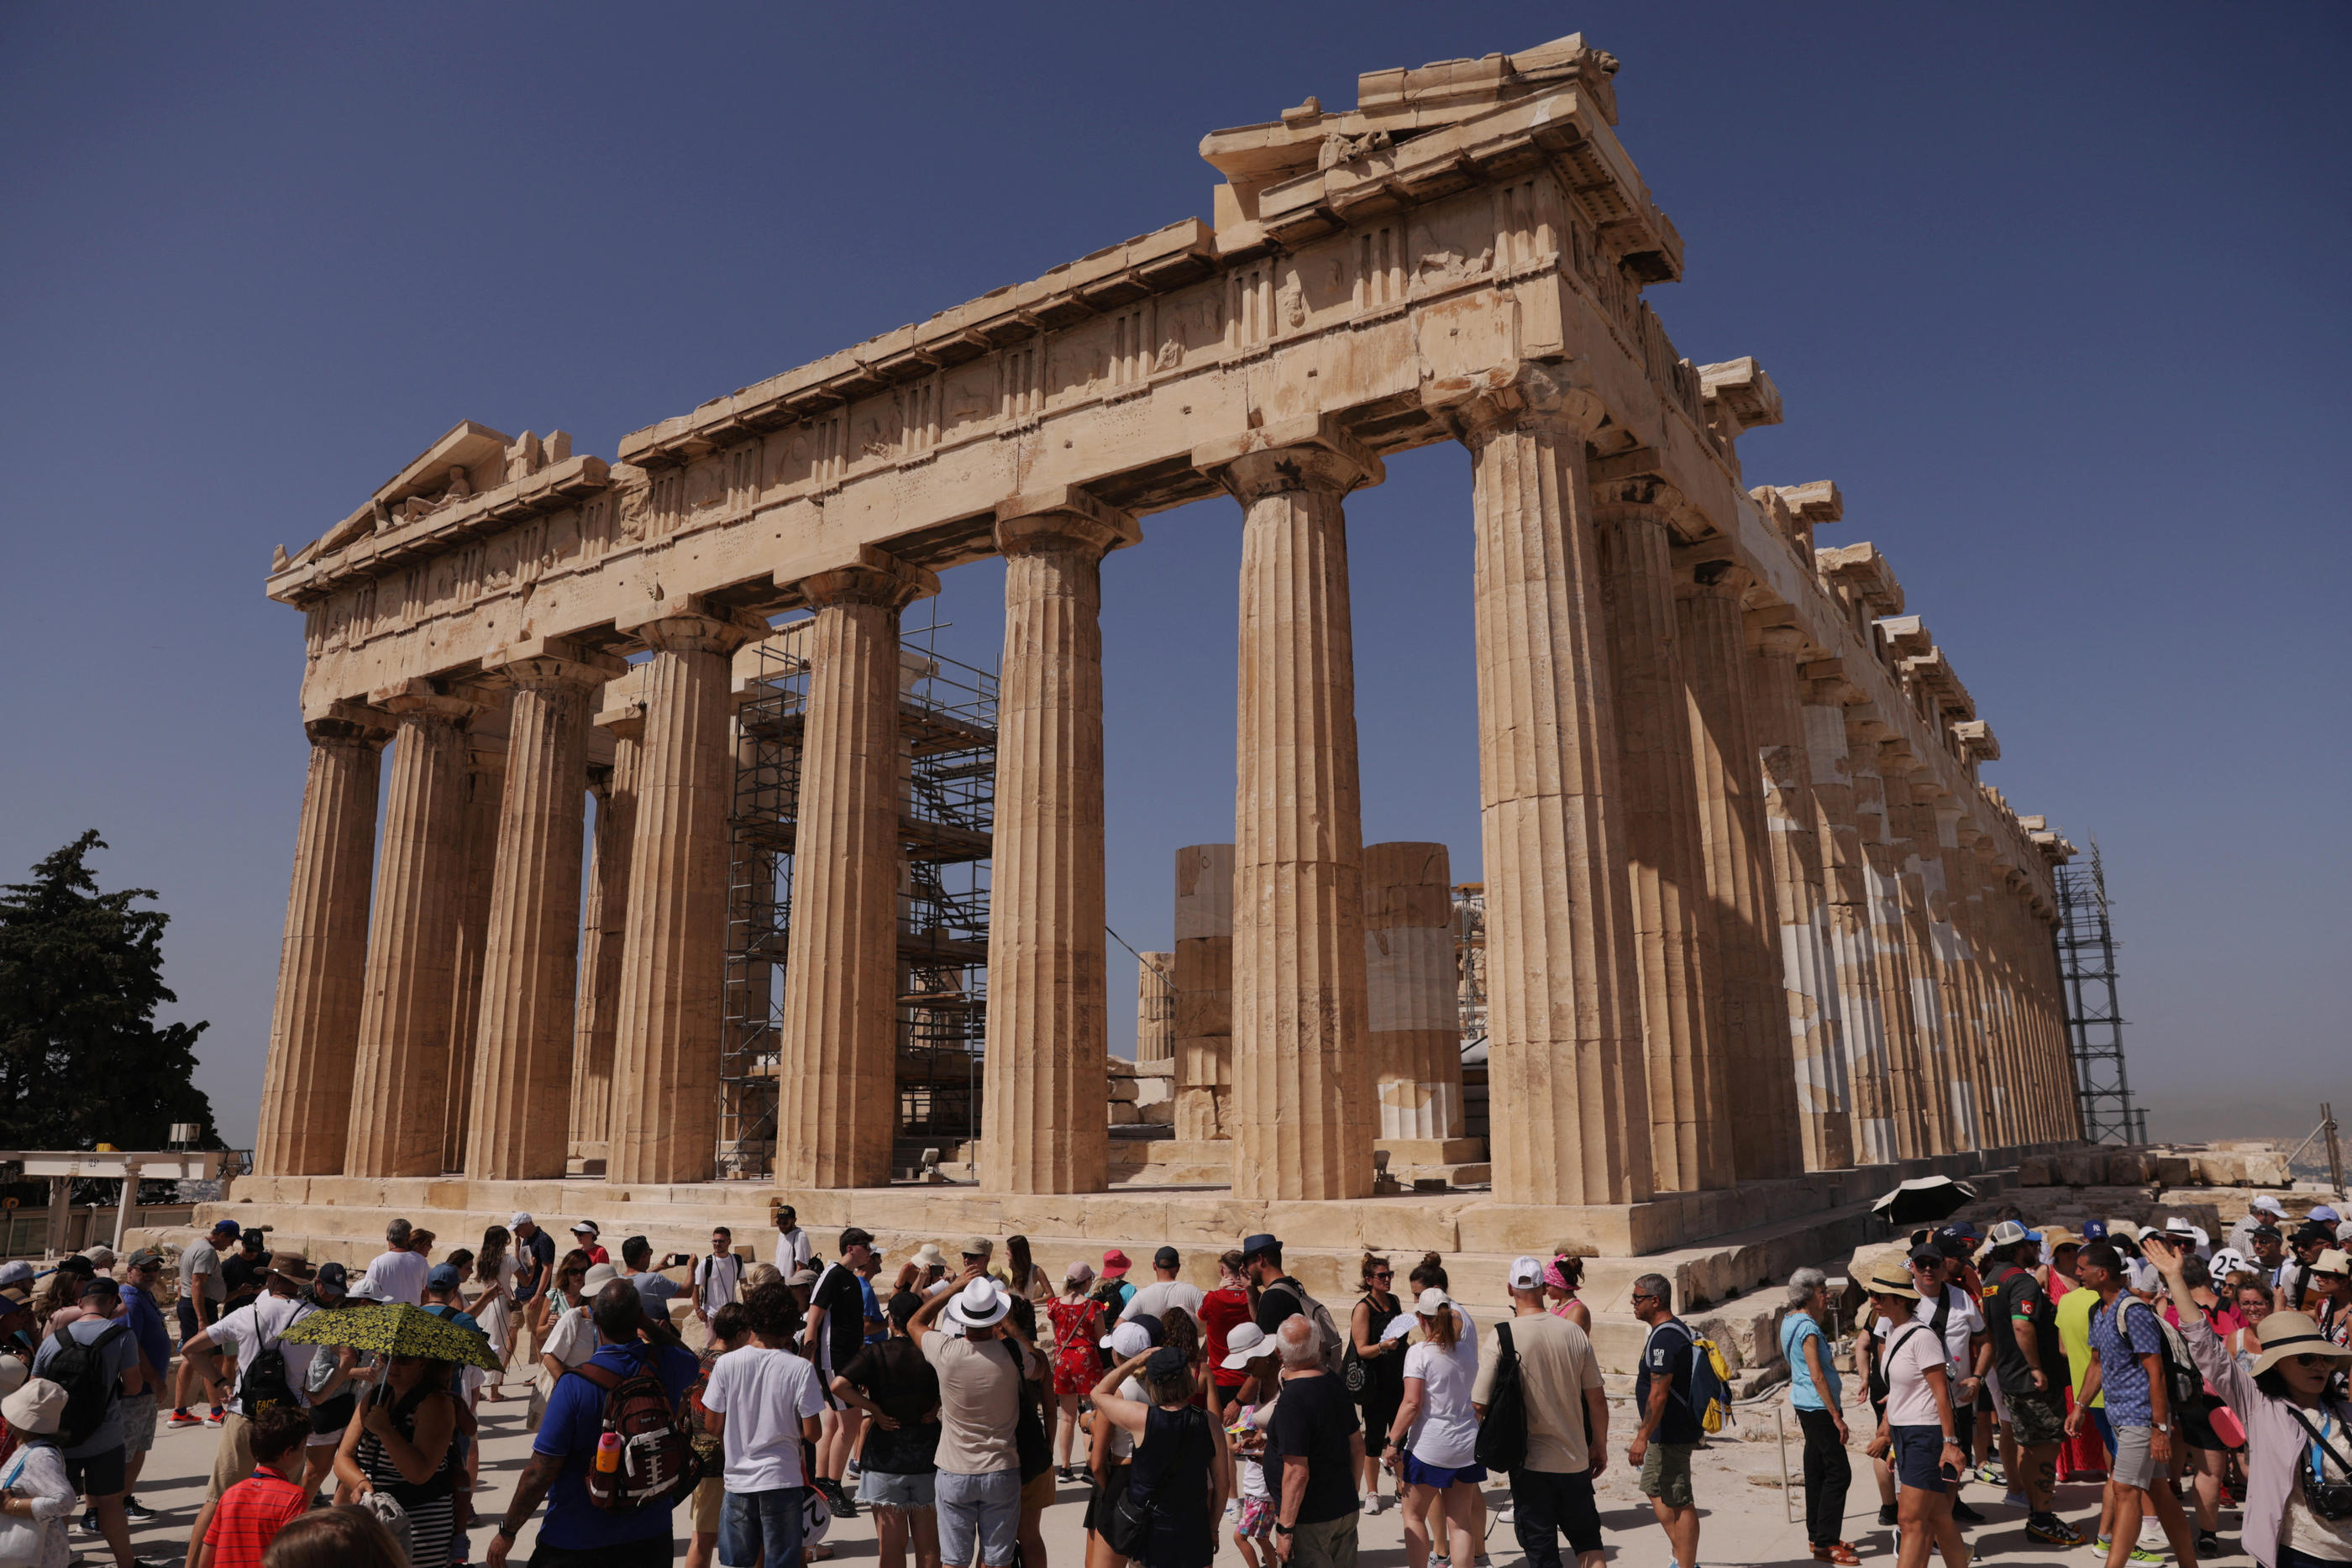 Pour visiter l'Acropole et le Parthénon, il faut réserver un créneau horaire depuis ce lundi. (Illustration) REUTERS/Louiza Vradi